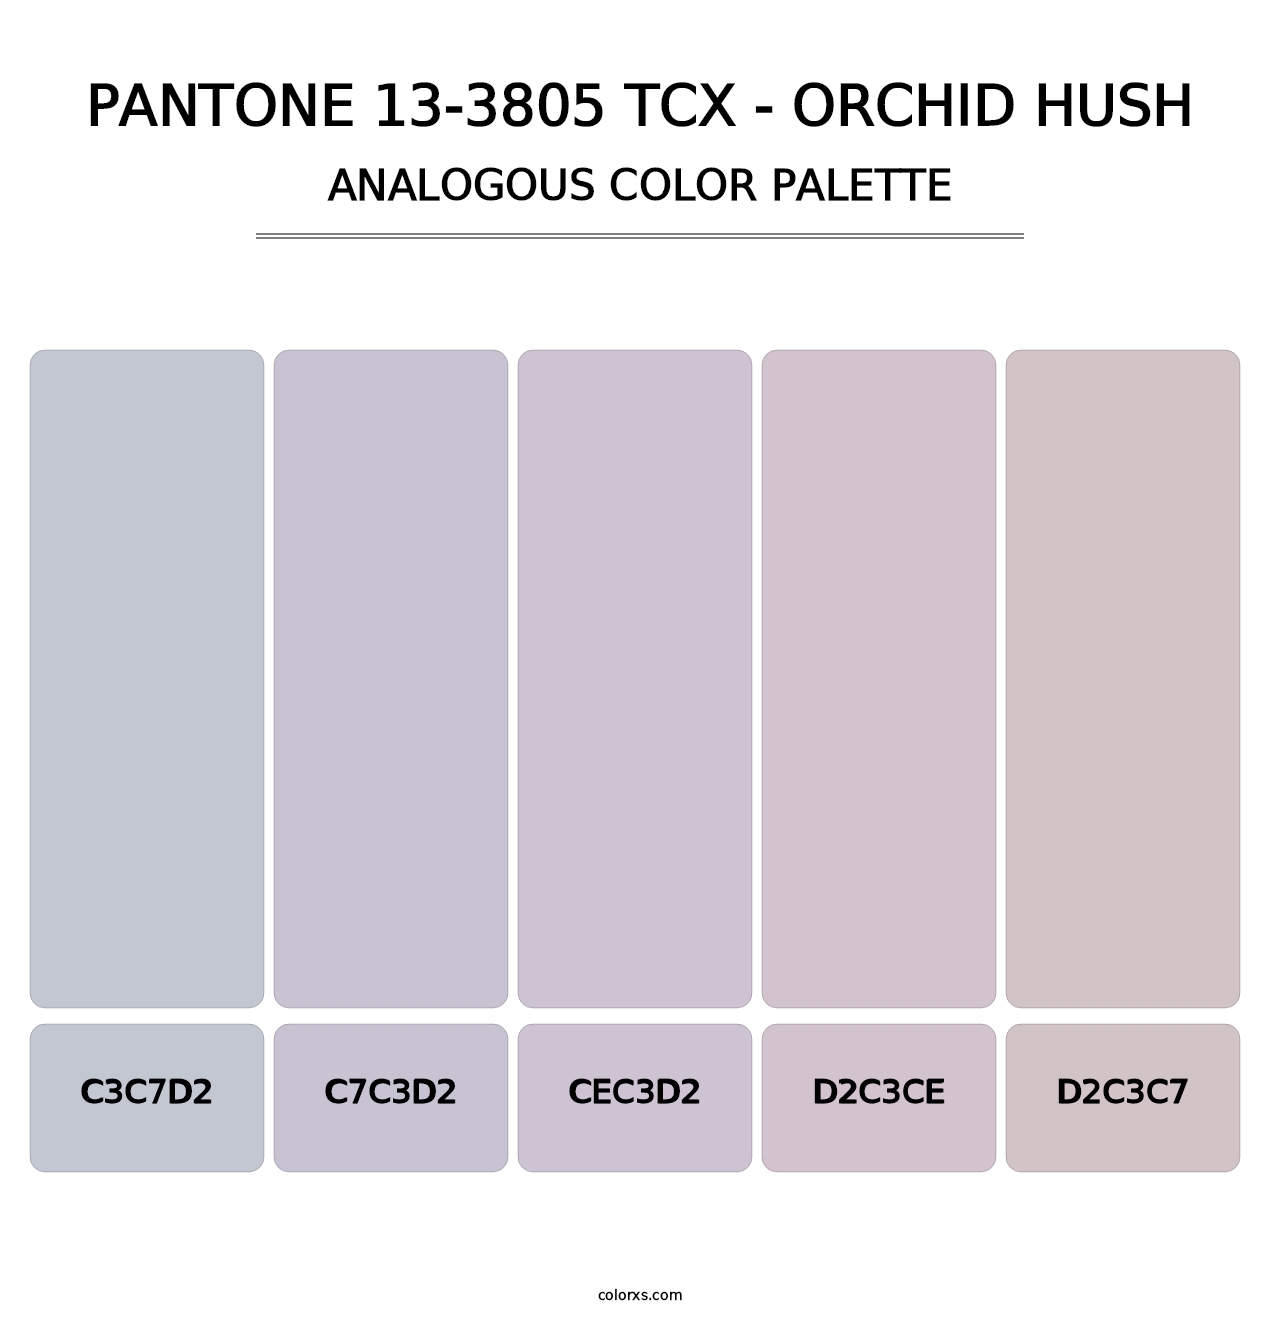 PANTONE 13-3805 TCX - Orchid Hush - Analogous Color Palette